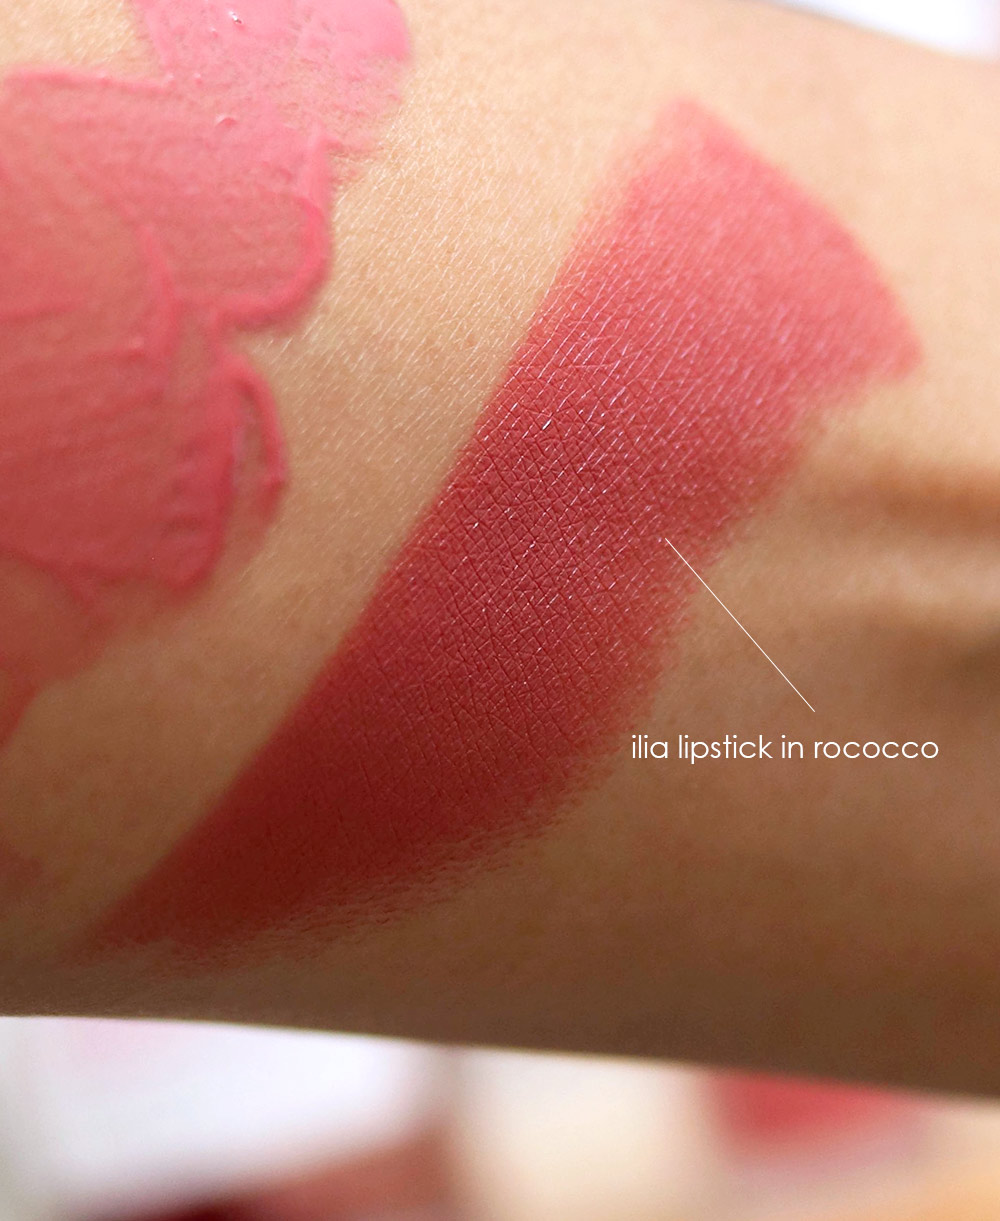 ilia lipstick in rococco